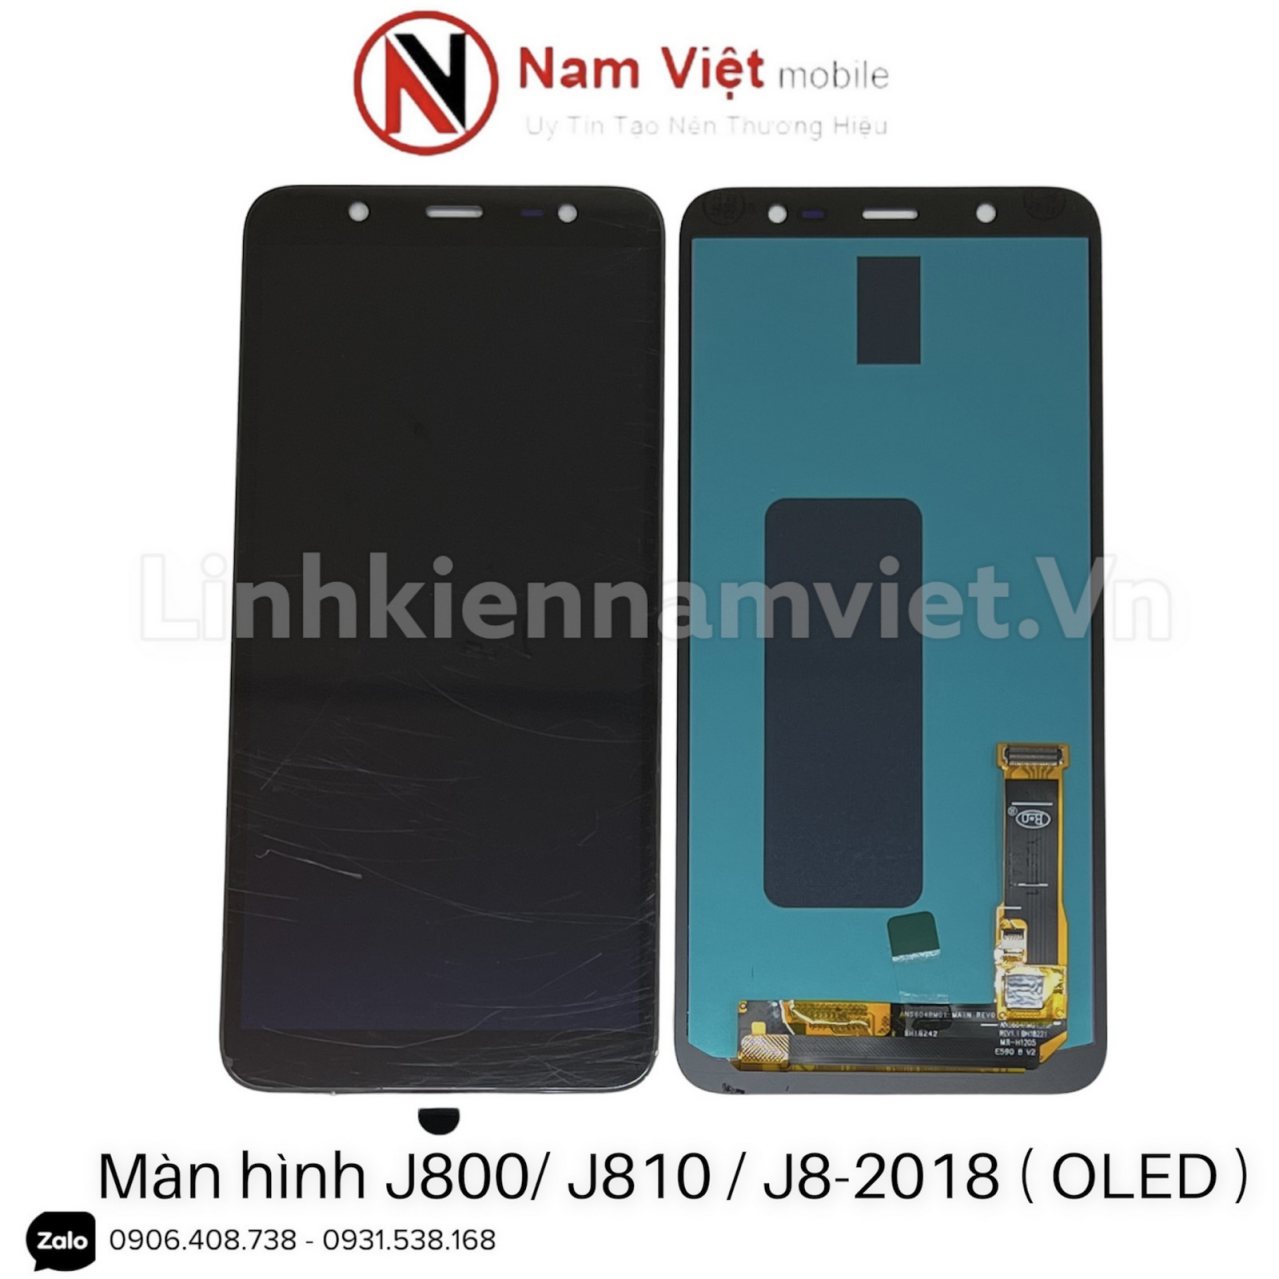 Man-hinh-J800-J810-J8-2018-OLED.